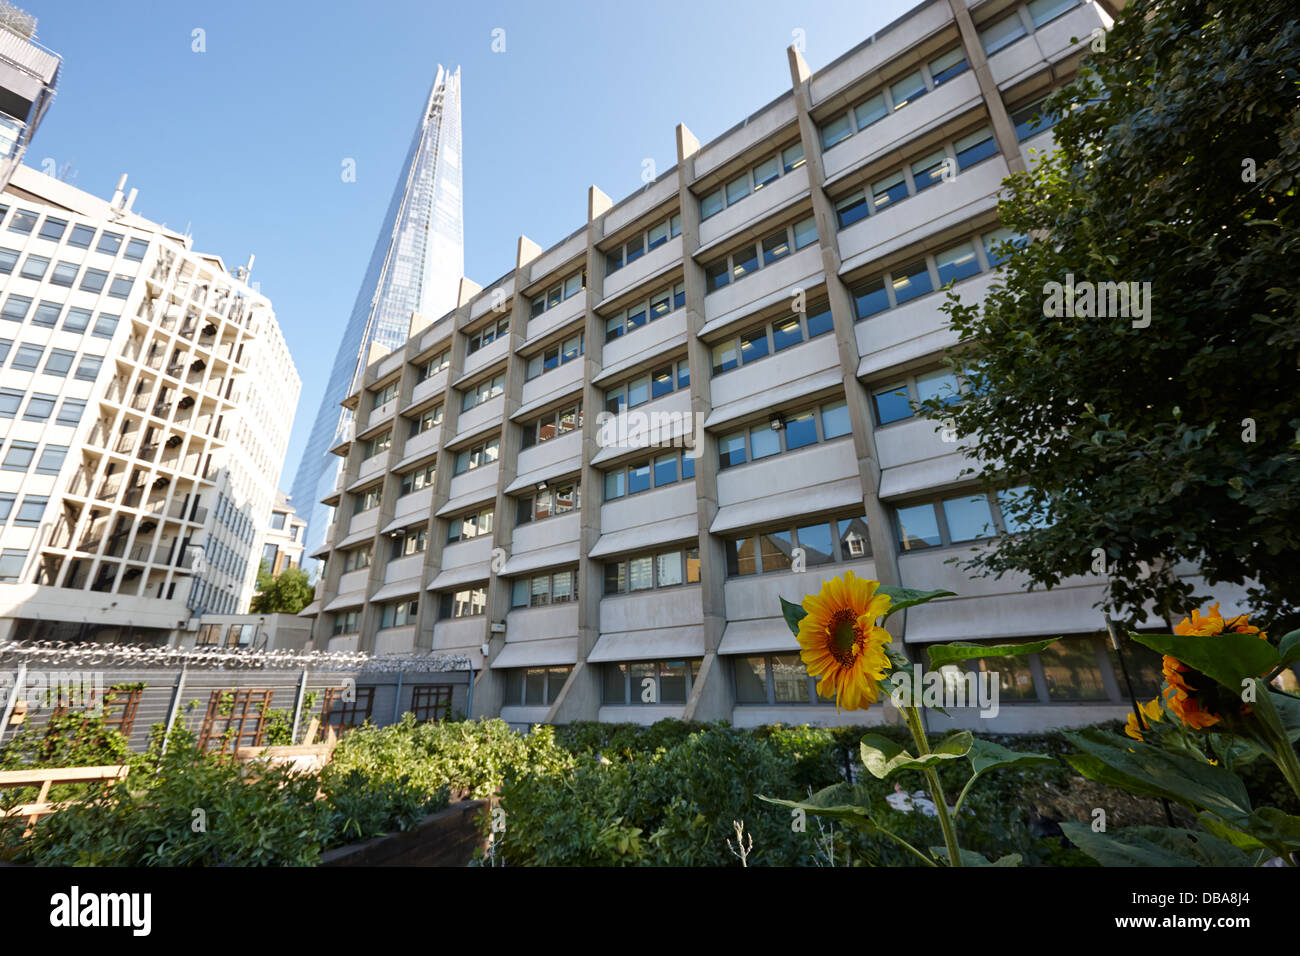 El edificio domina melior shard jardín comunitario de la calle Londres England Reino Unido Foto de stock